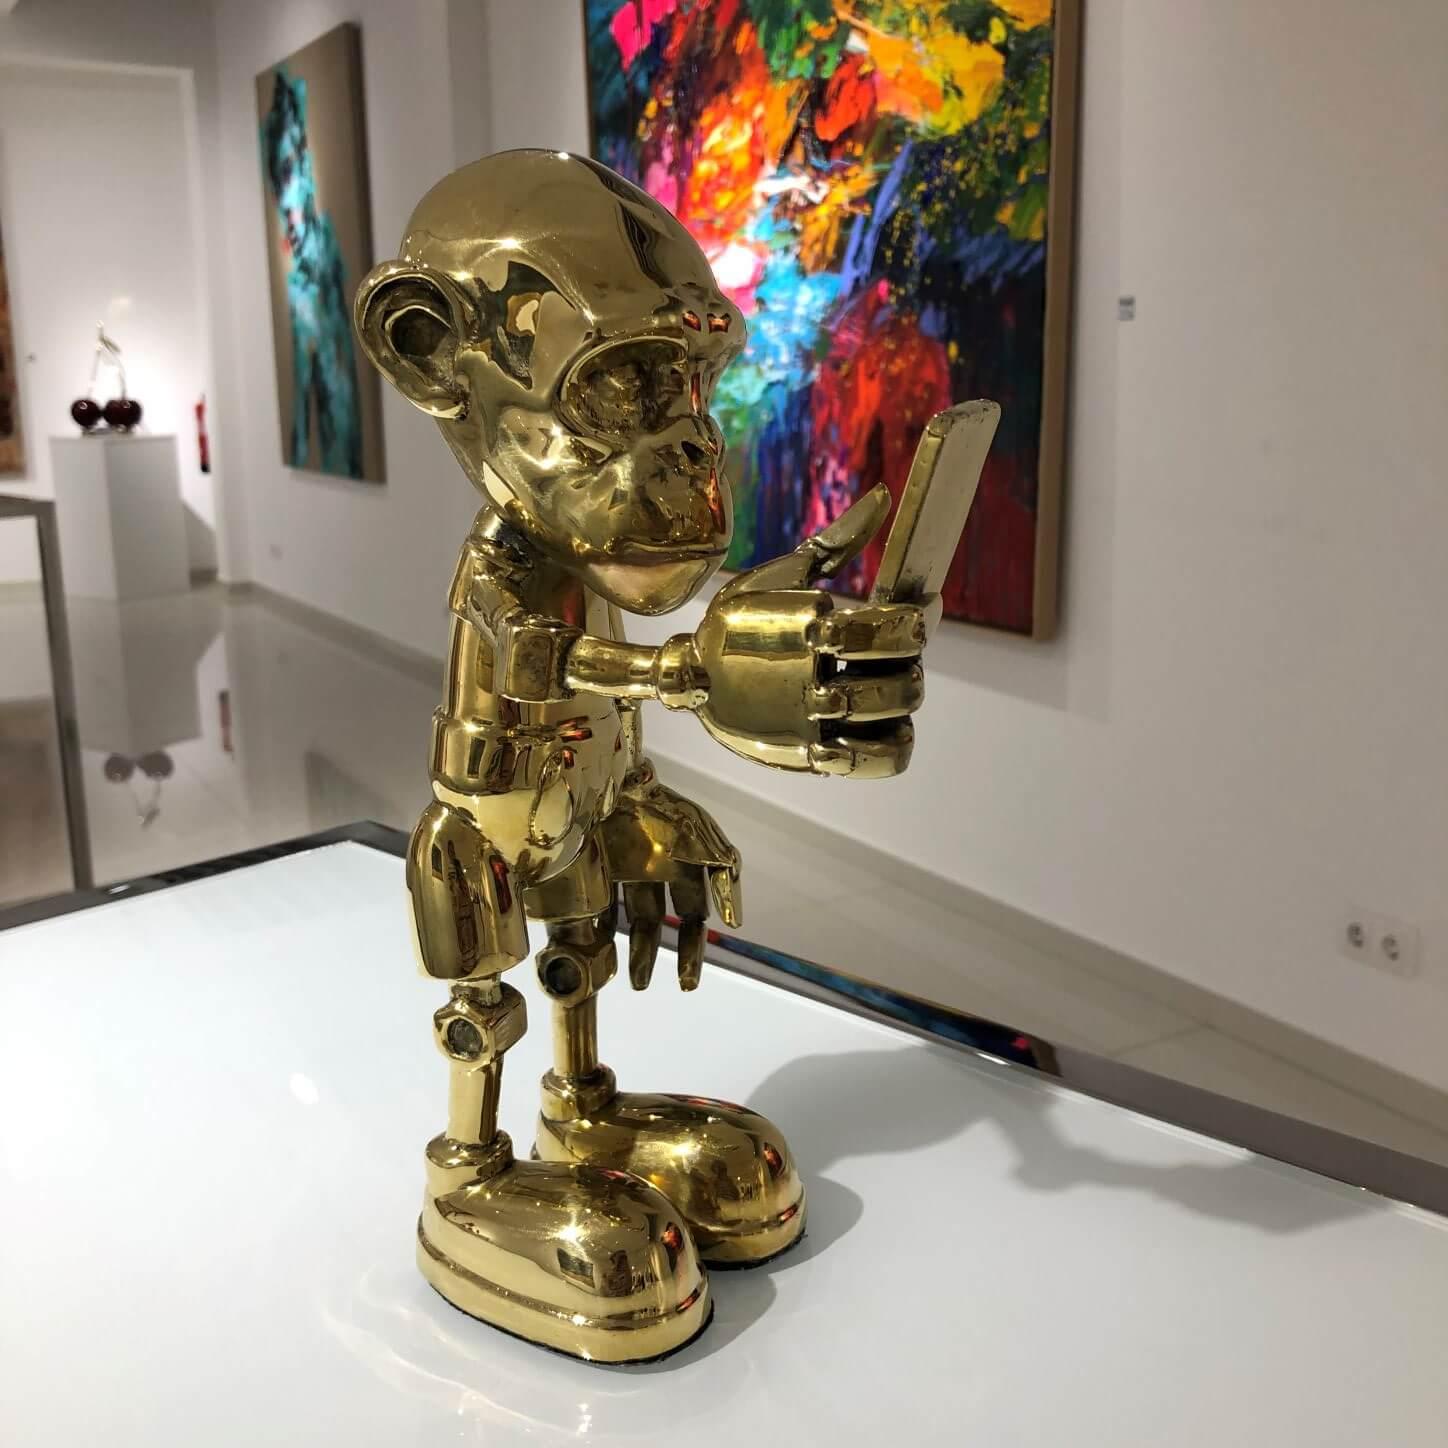 Toy Art  - Golden bronze sculpture, 2022 - Pop Art Sculpture by Beto Gatti